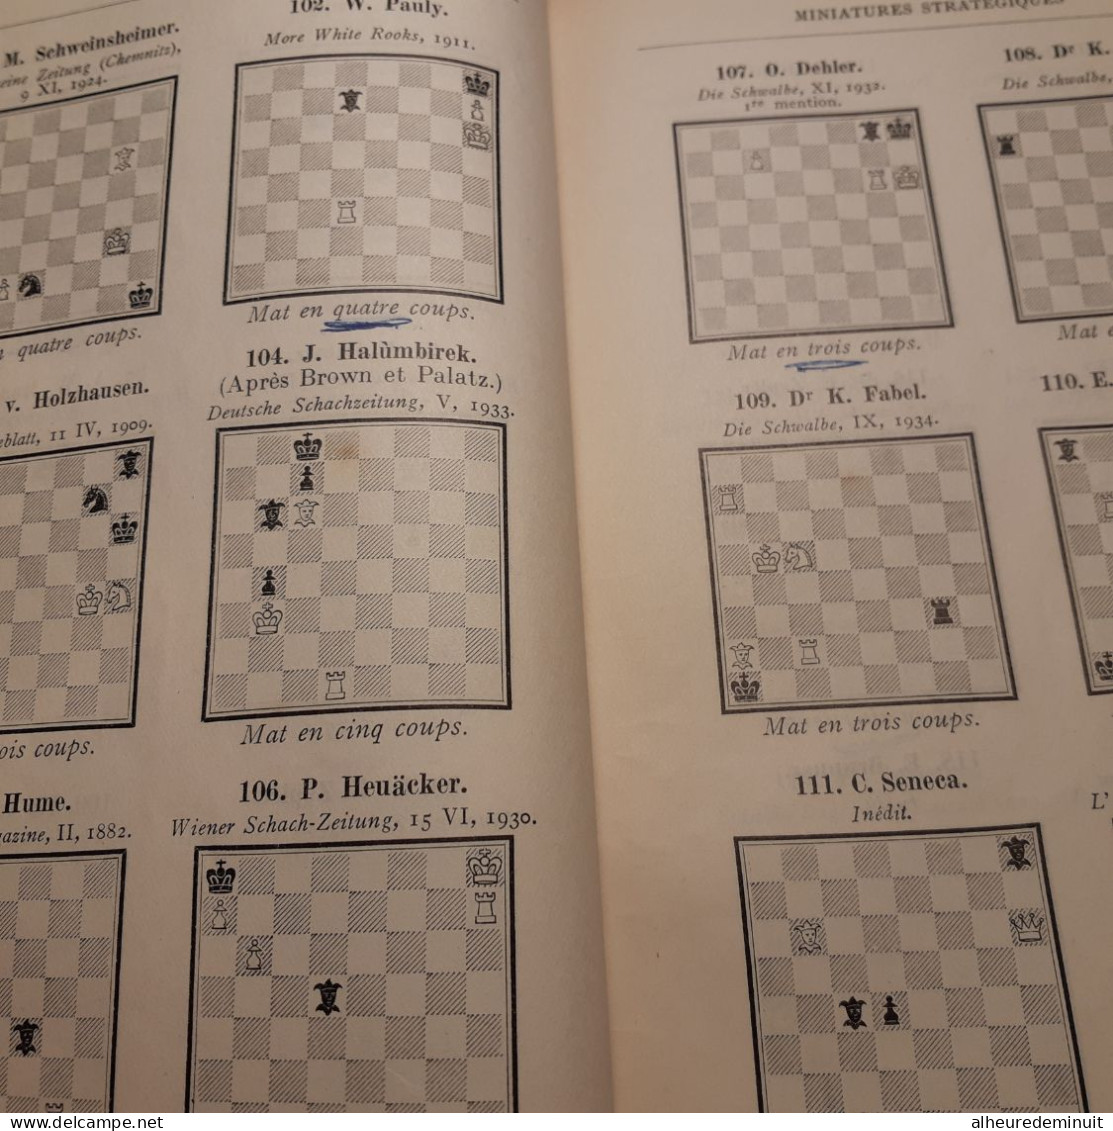 livret MINIATURES STRATEGIQUES"F.PALATZ"monographies sur le problème d'Echecs"l'échiquier Français"200 miniatures"jeux